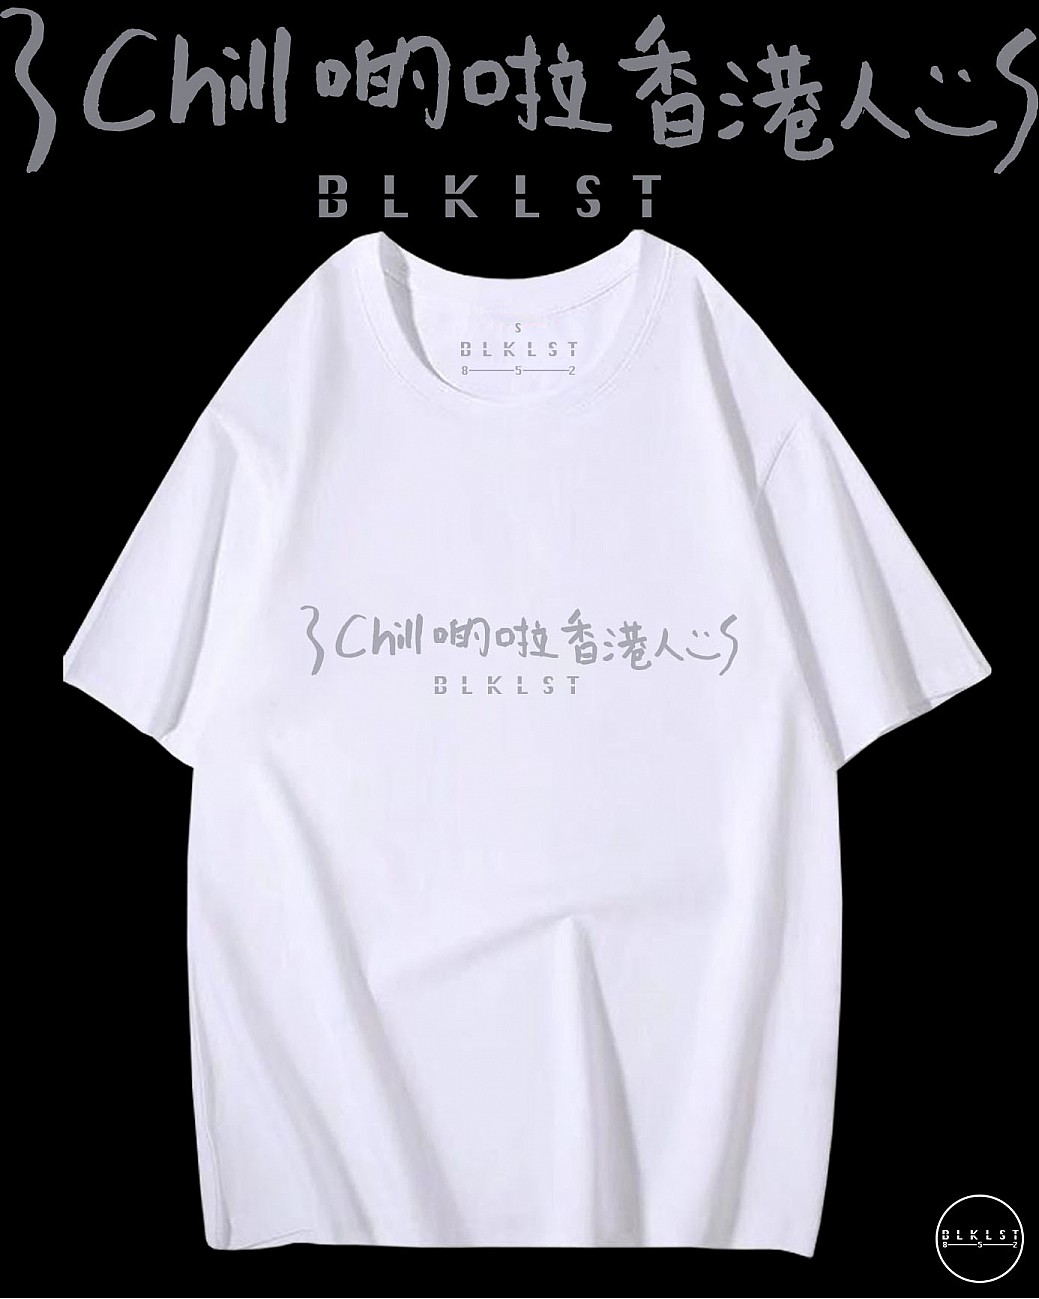 「CHILL 啲啦香港人」T恤